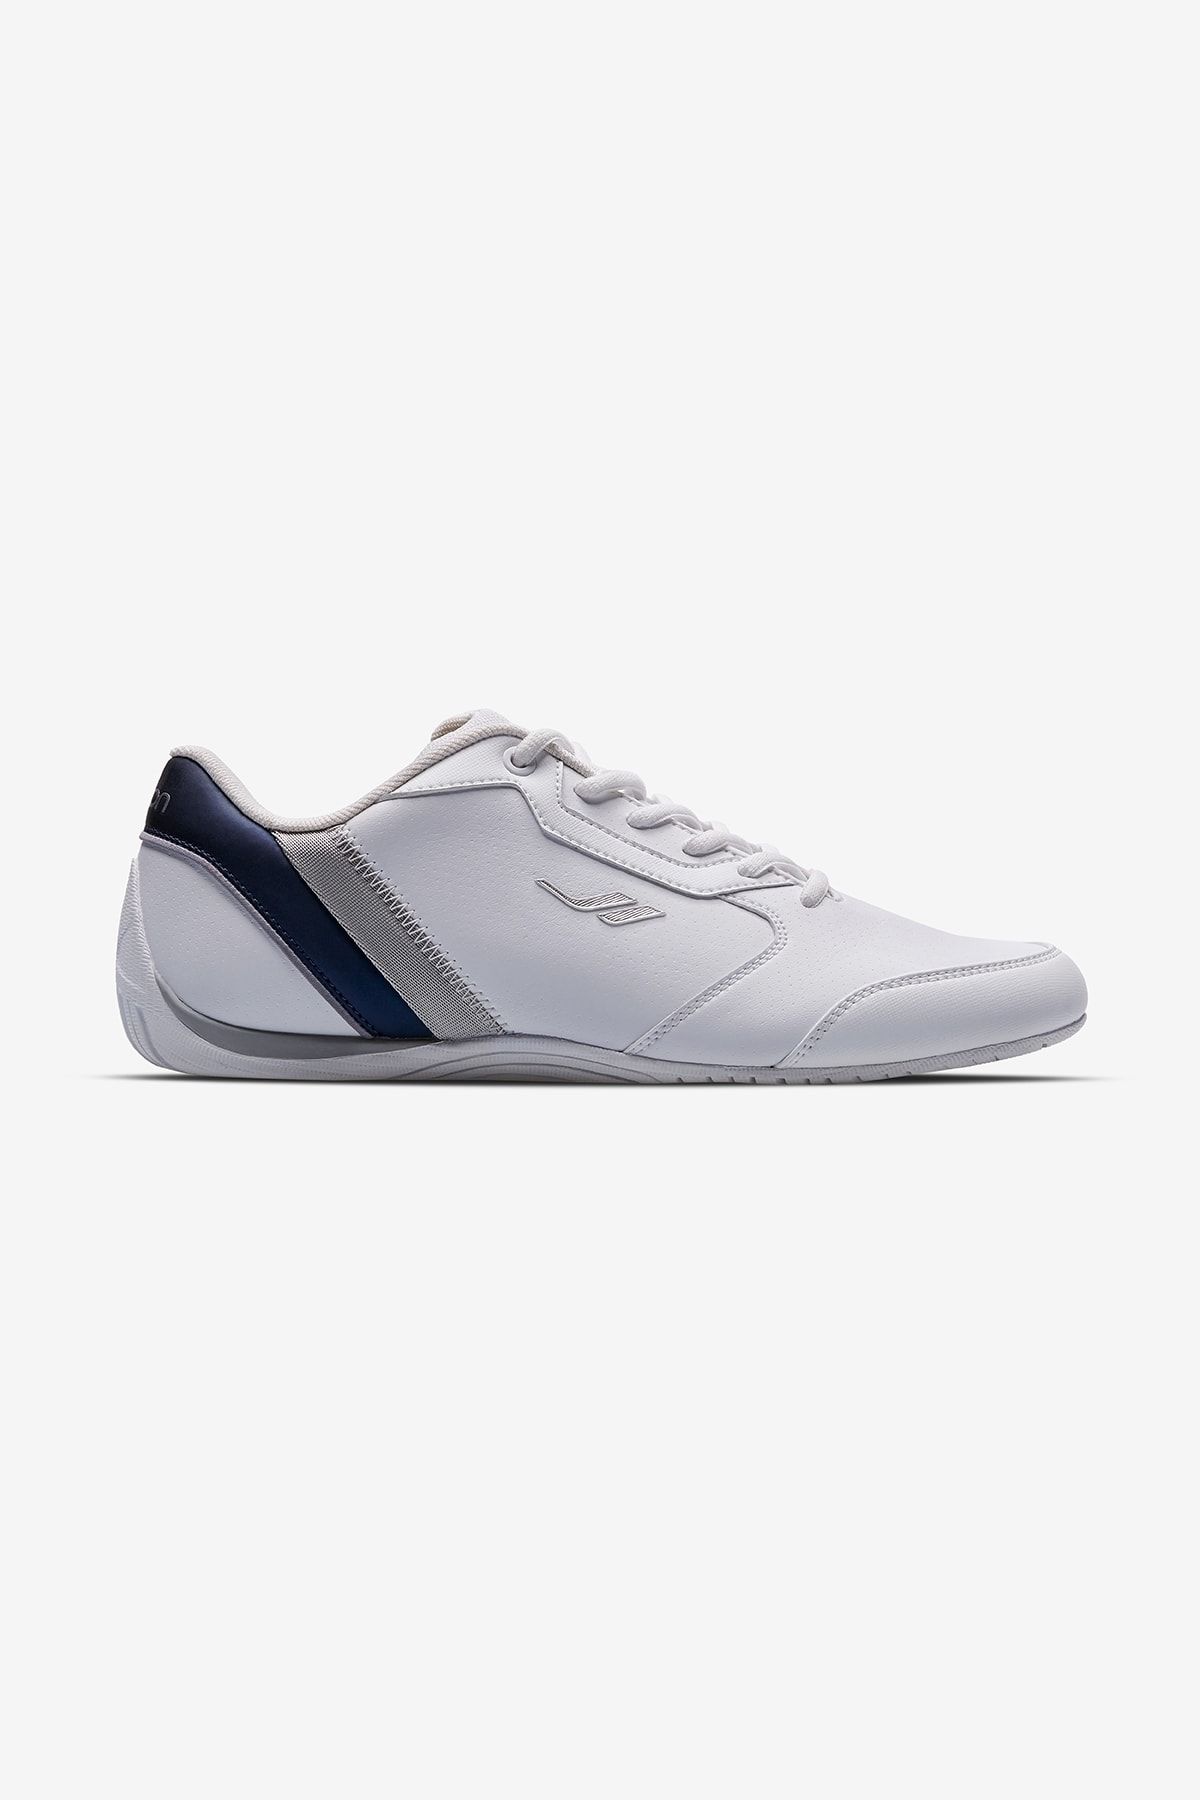 Lescon Journey-2 Beyaz Günlük Erkek Sneakers Spor Ayakkabı